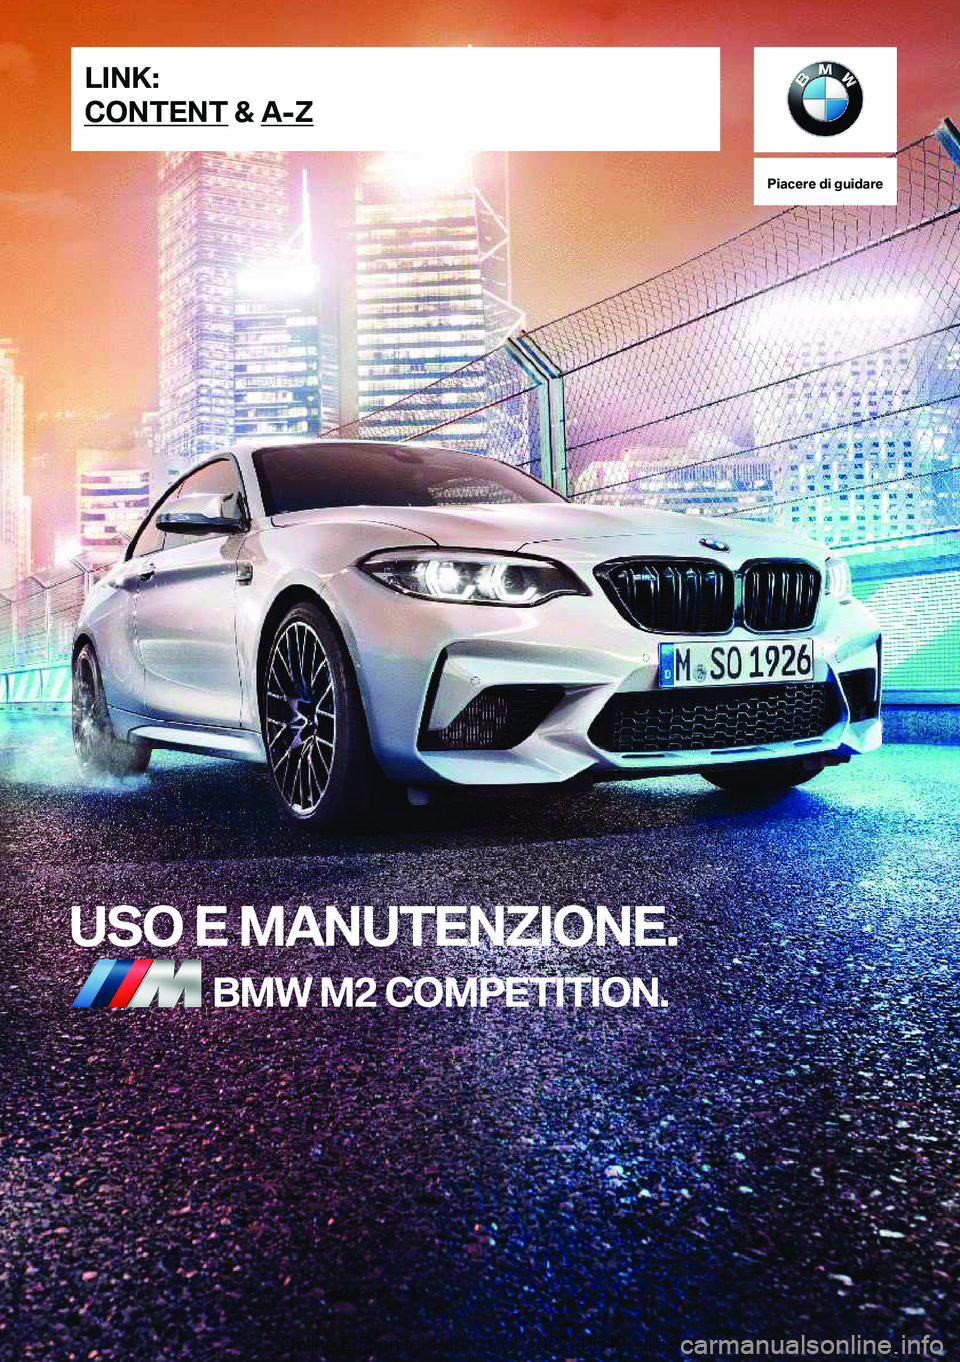 BMW M2 2020  Libretti Di Uso E manutenzione (in Italian) �P�i�a�c�e�r�e��d�i��g�u�i�d�a�r�e
�U�S�O��E��M�A�N�U�T�E�N�;�I�O�N�E�.�B�M�W��M�2��C�O�M�P�E�T�I�T�I�O�N�.�L�I�N�K�:
�C�O�N�T�E�N�T��&��A�-�;�O�n�l�i�n�e��E�d�i�t�i�o�n��f�o�r��P�a�r�t��n